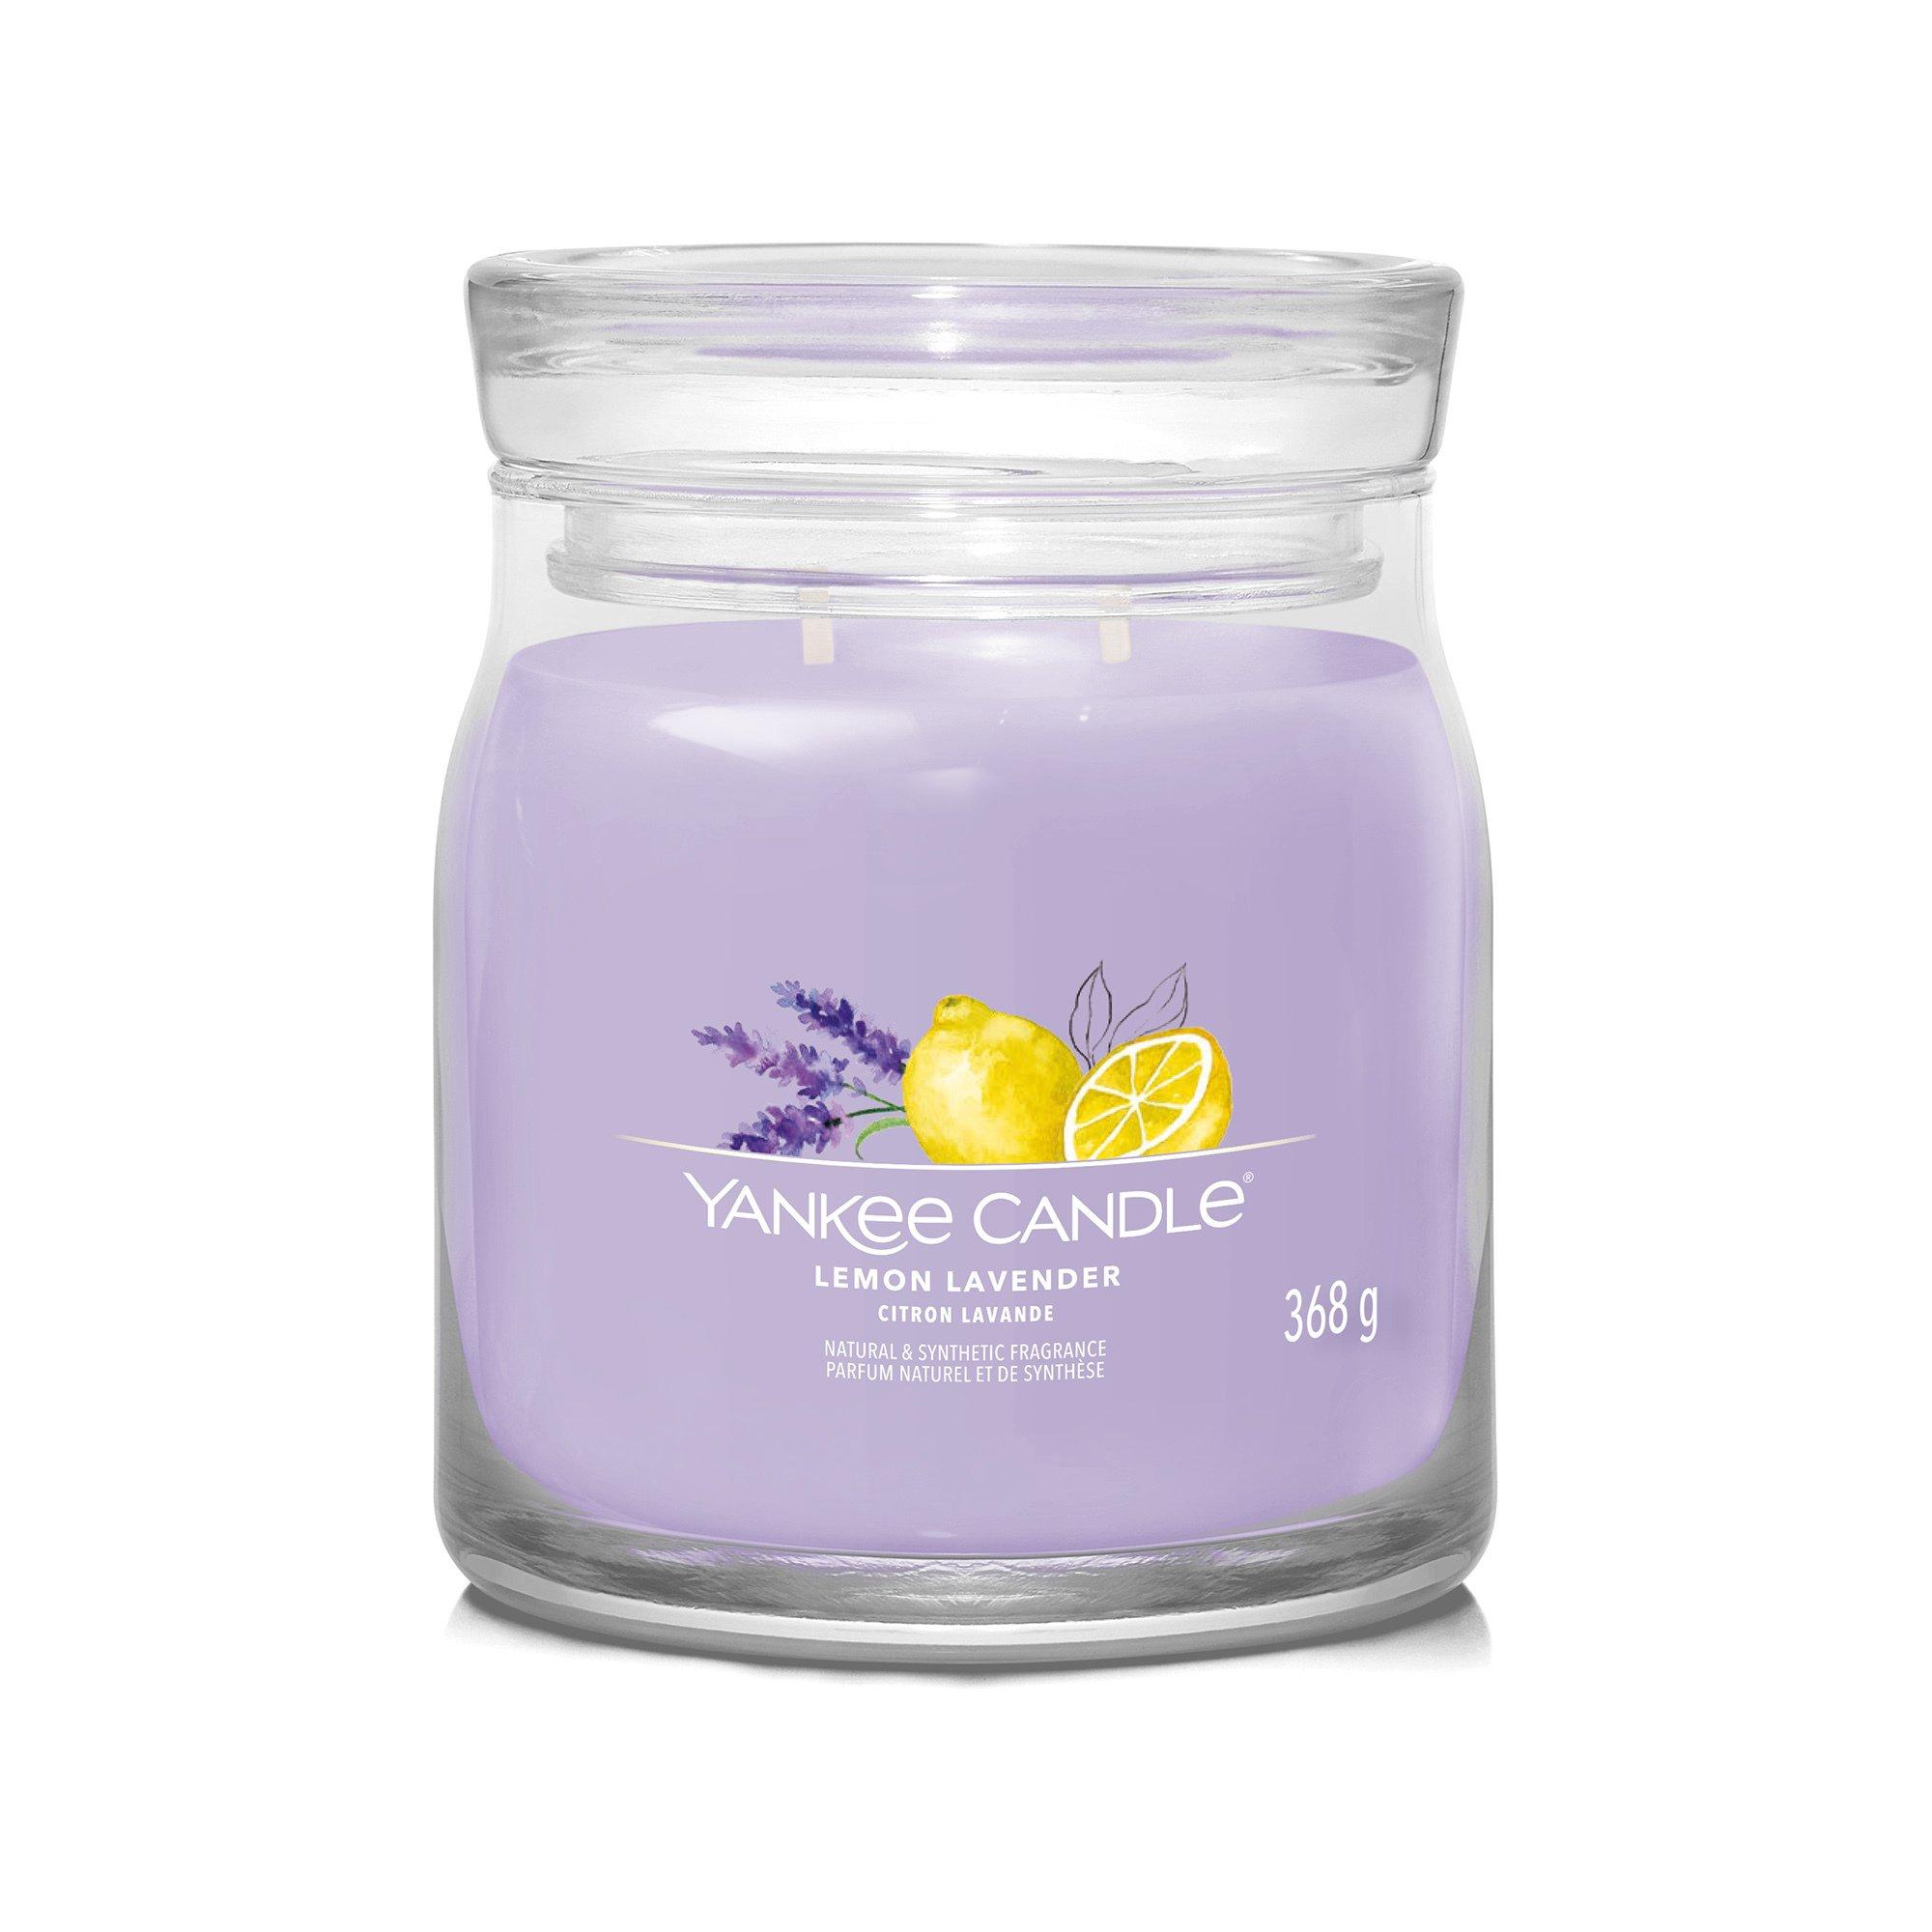 Yankee Candle Signature Duftkerze im Glas Lemon Lavender 